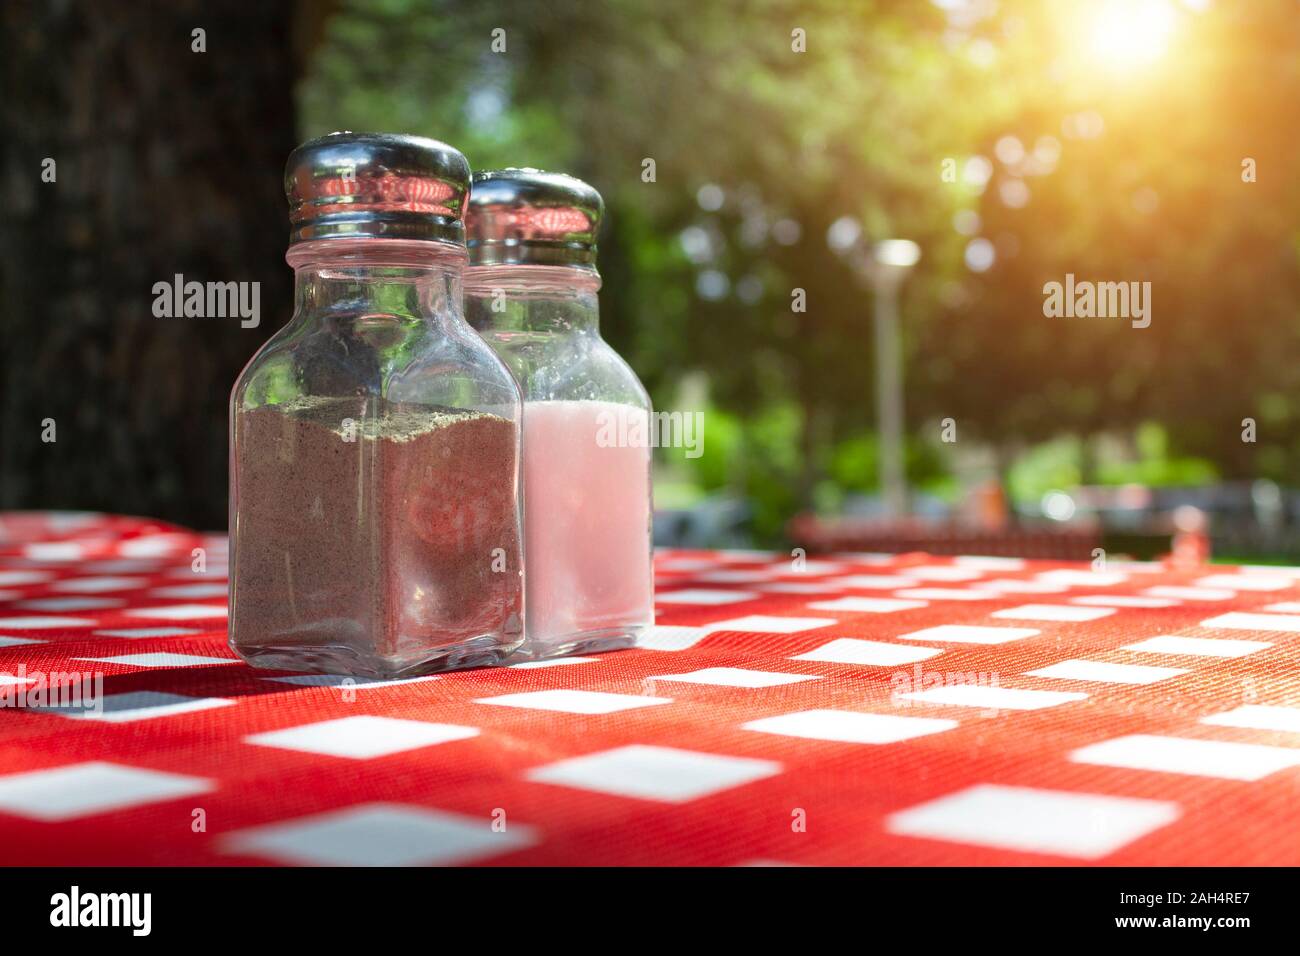 Salero y pimentero de mantel de picnic con sol de fondo. Foto de stock